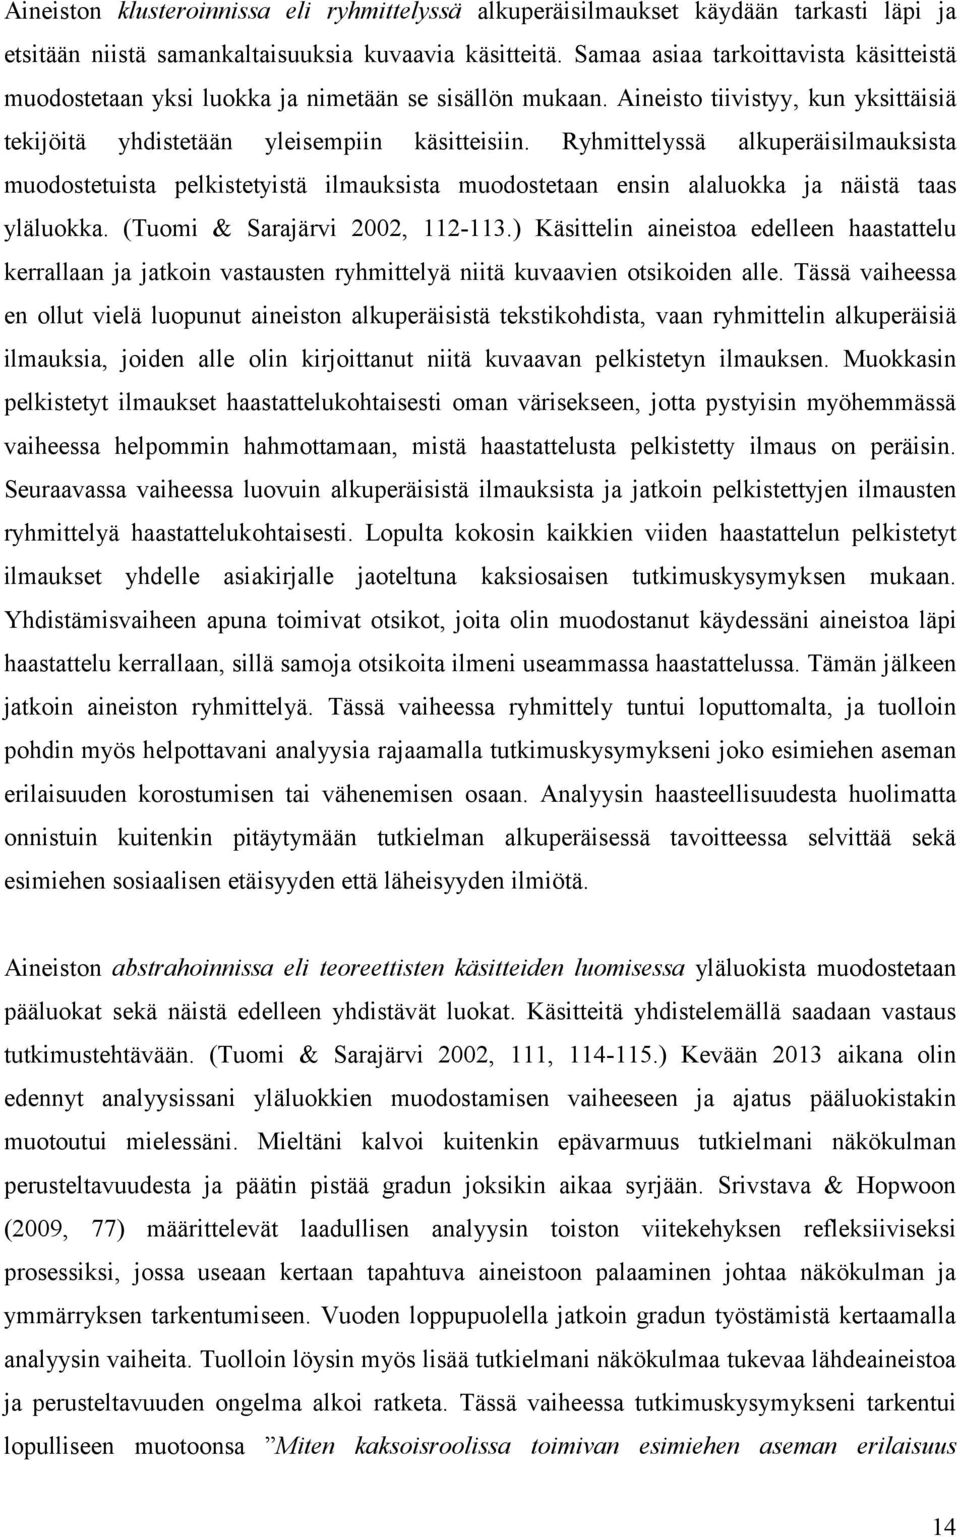 Ryhmittelyssä alkuperäisilmauksista muodostetuista pelkistetyistä ilmauksista muodostetaan ensin alaluokka ja näistä taas yläluokka. (Tuomi & Sarajärvi 2002, 112-113.